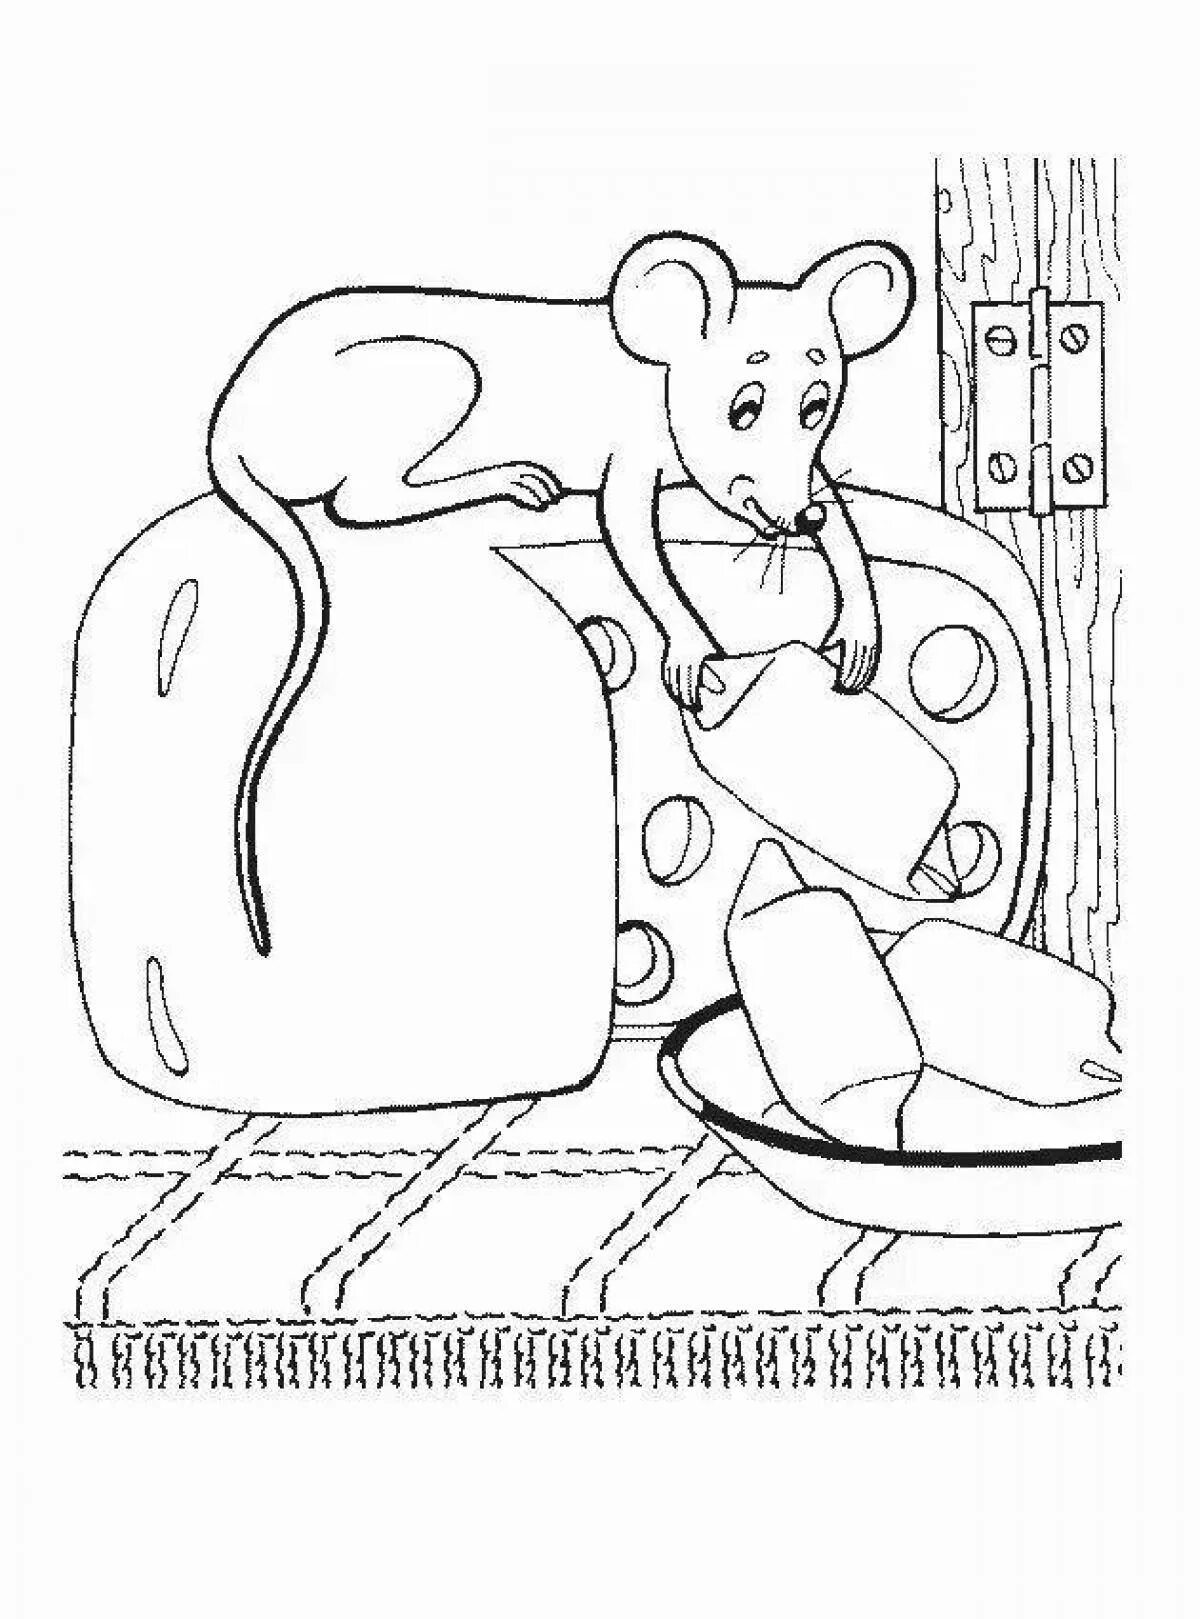 Глупая раскраска. Маршак сказка о глупом мышонке раскраска. Раскраска к сказке о глупом мышонке Маршака для детей. Раскраска мышонок. Мышь раскраска.